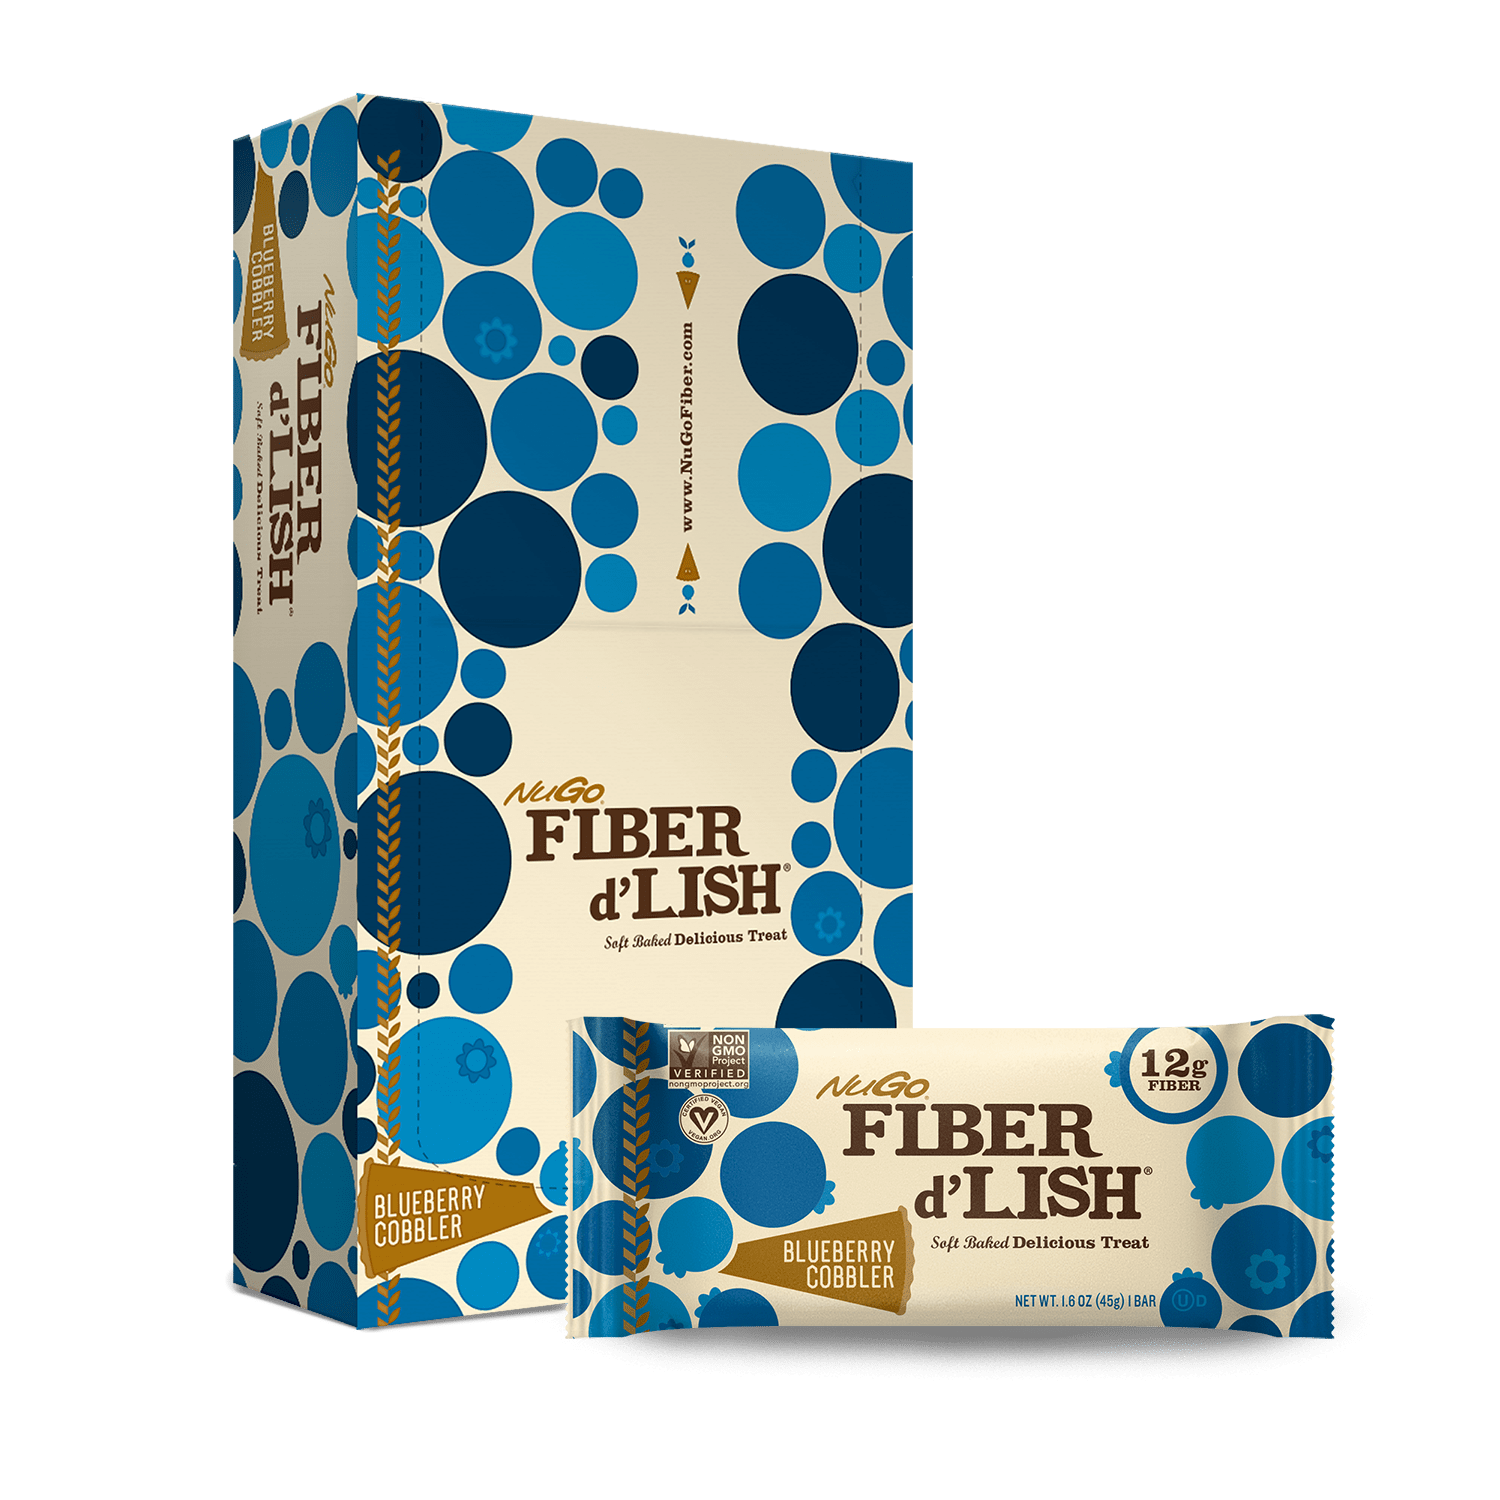 NuGo Fiber d'Lish Blueberry Cobbler Bar and Box